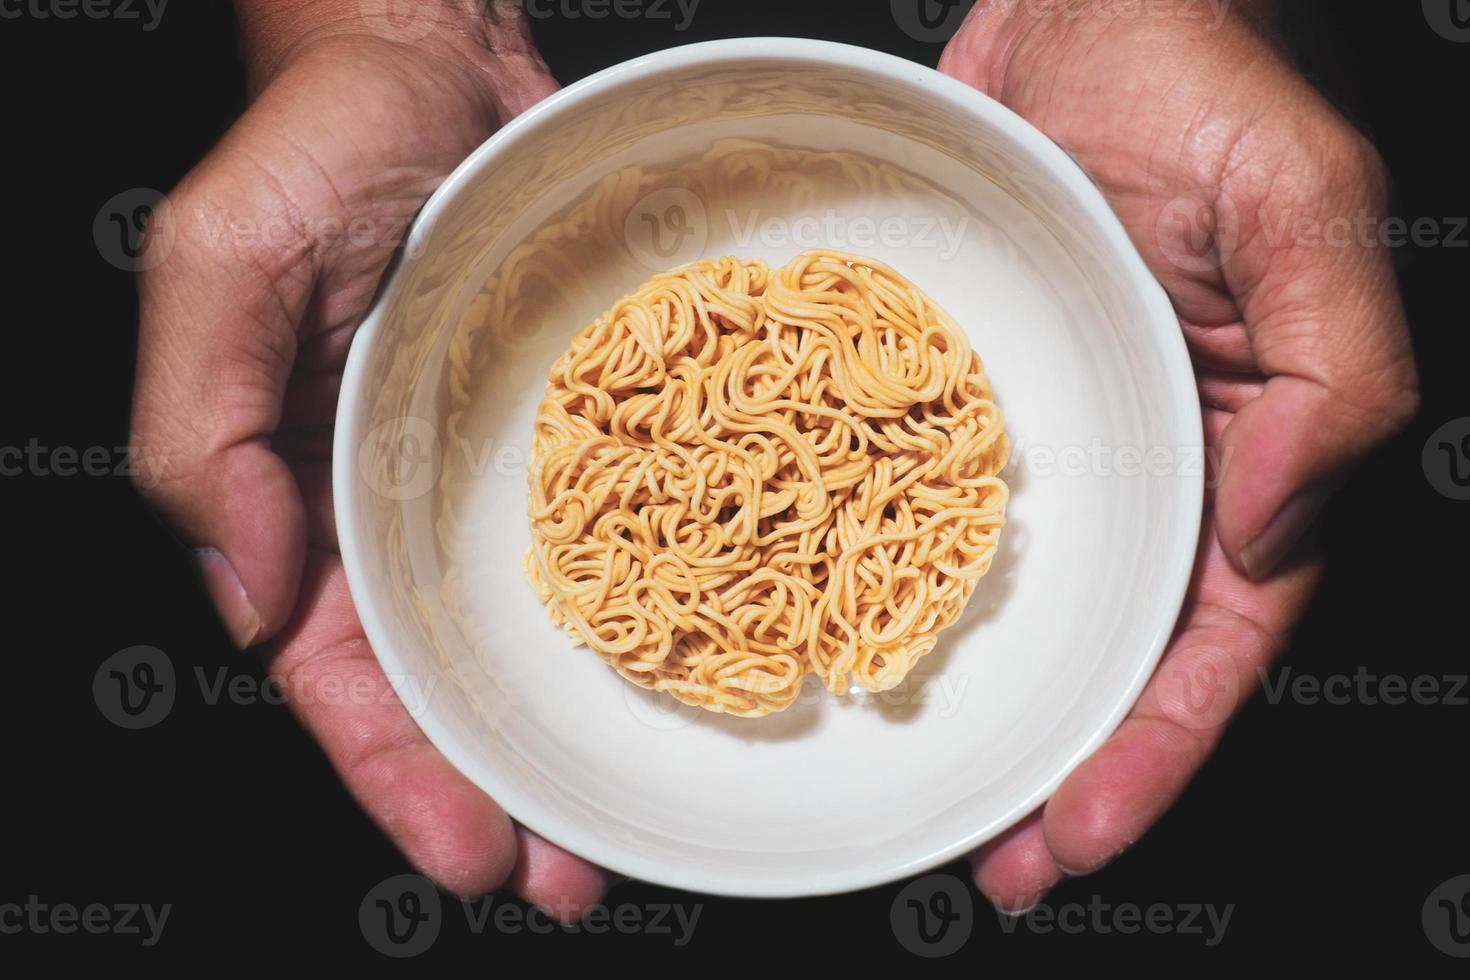 omedelbar spaghetti i en kopp. mat kris begrepp mat brist foto